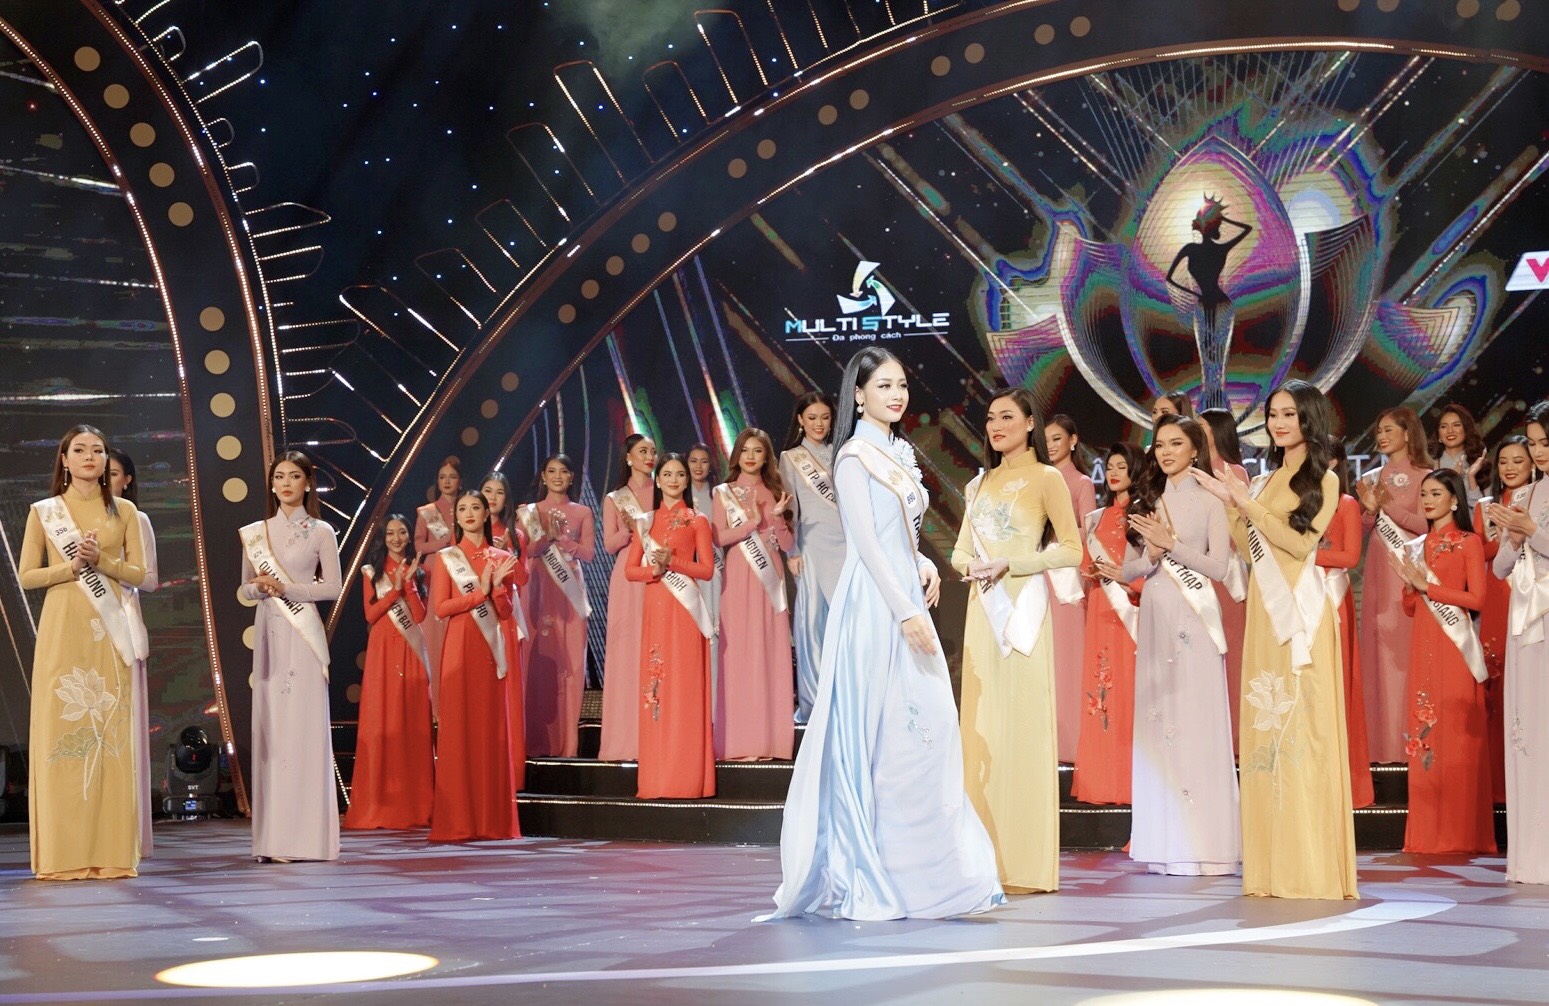 Bán kết Hoa hậu Du lịch Việt Nam 2022: 'Cháy’ hết mình trên sân khấu, 40 thí sinh xuất sắc đi tiếp vào đêm Chung kết - Ảnh 1.